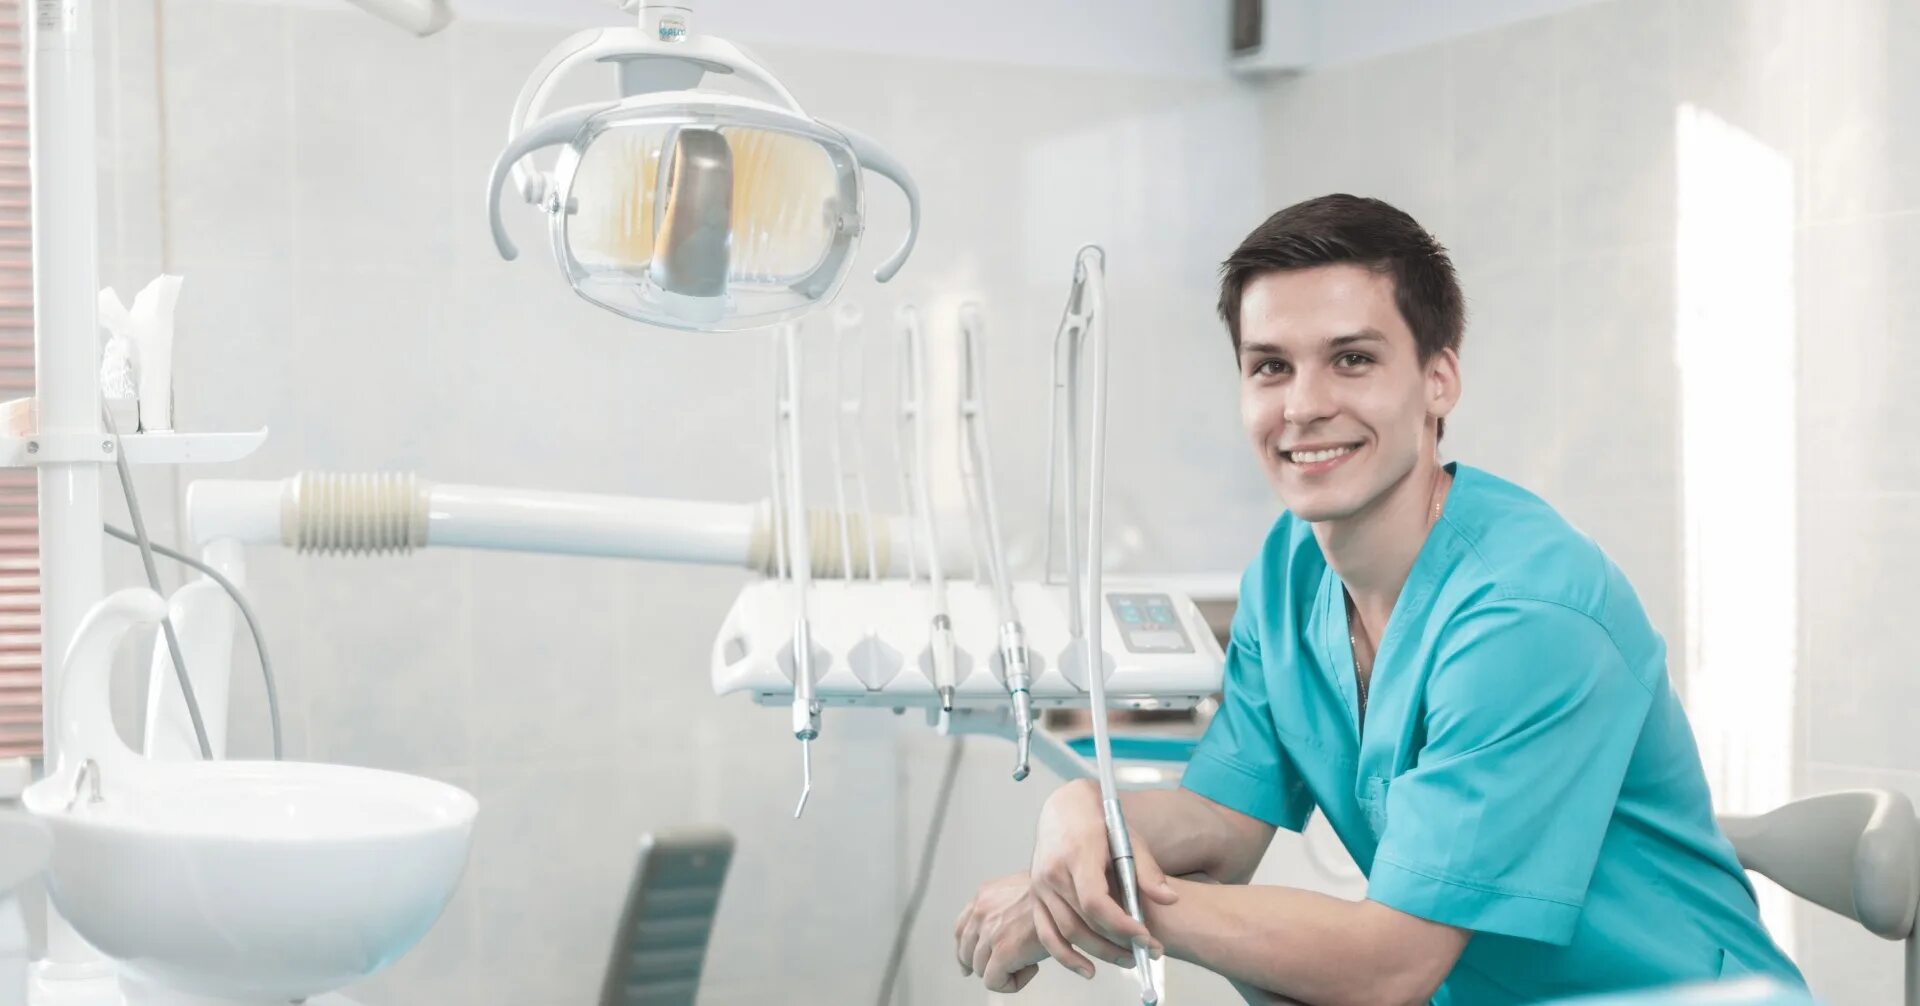 Авито стоматолог